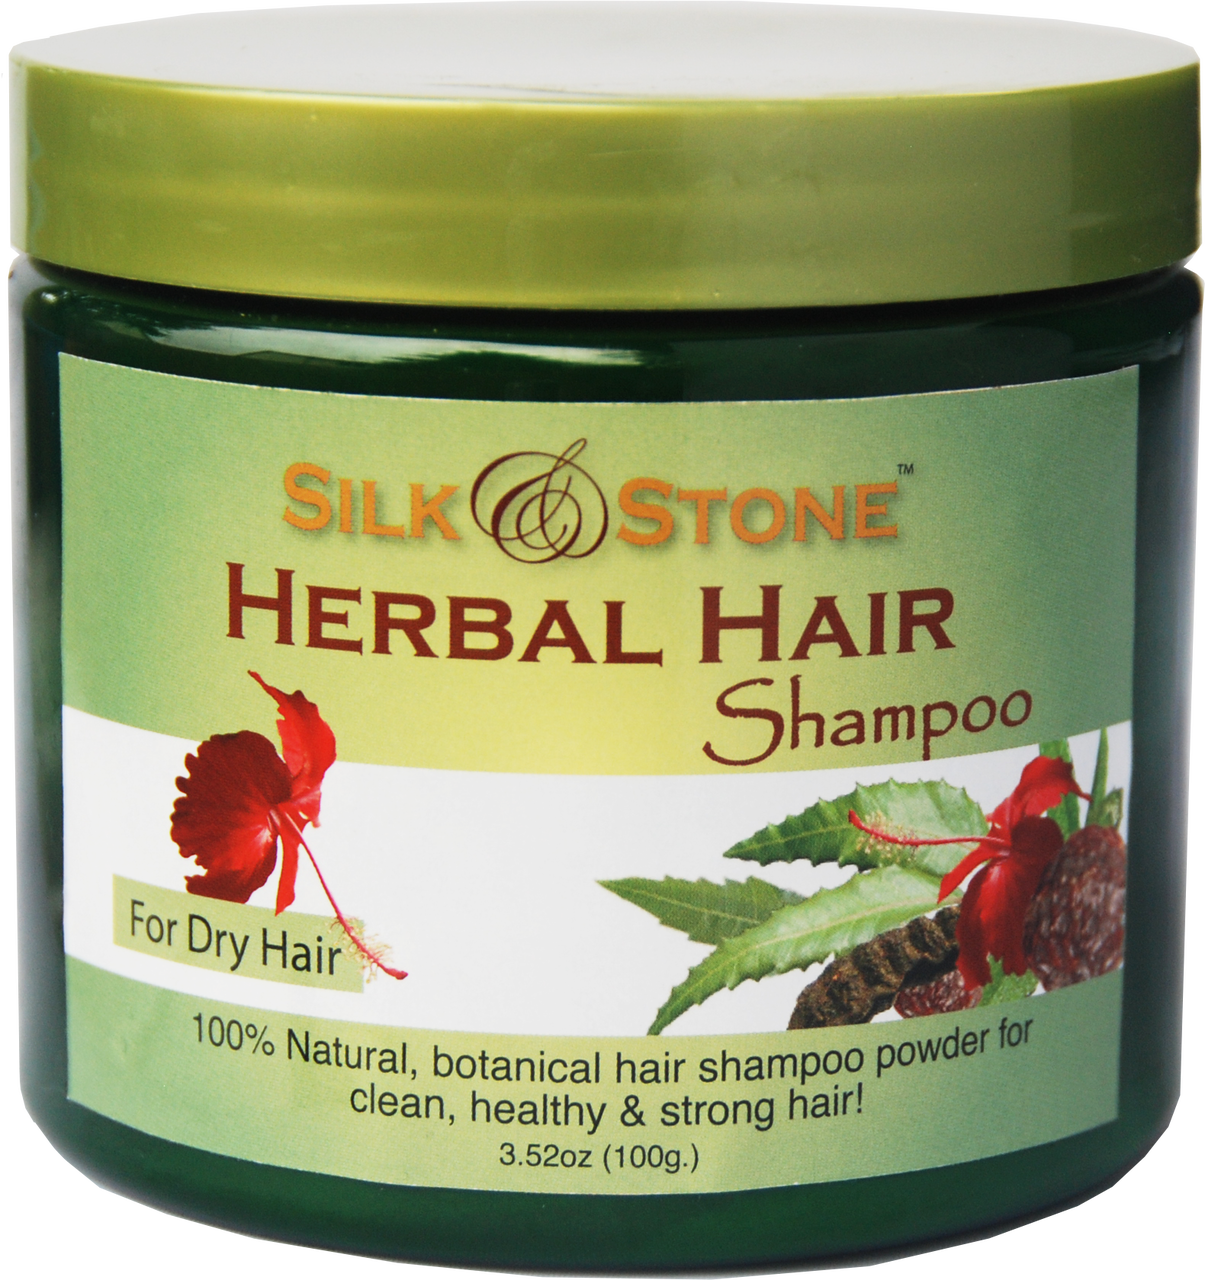 dry-hair-shampoo-powder-96295.1400474687.png